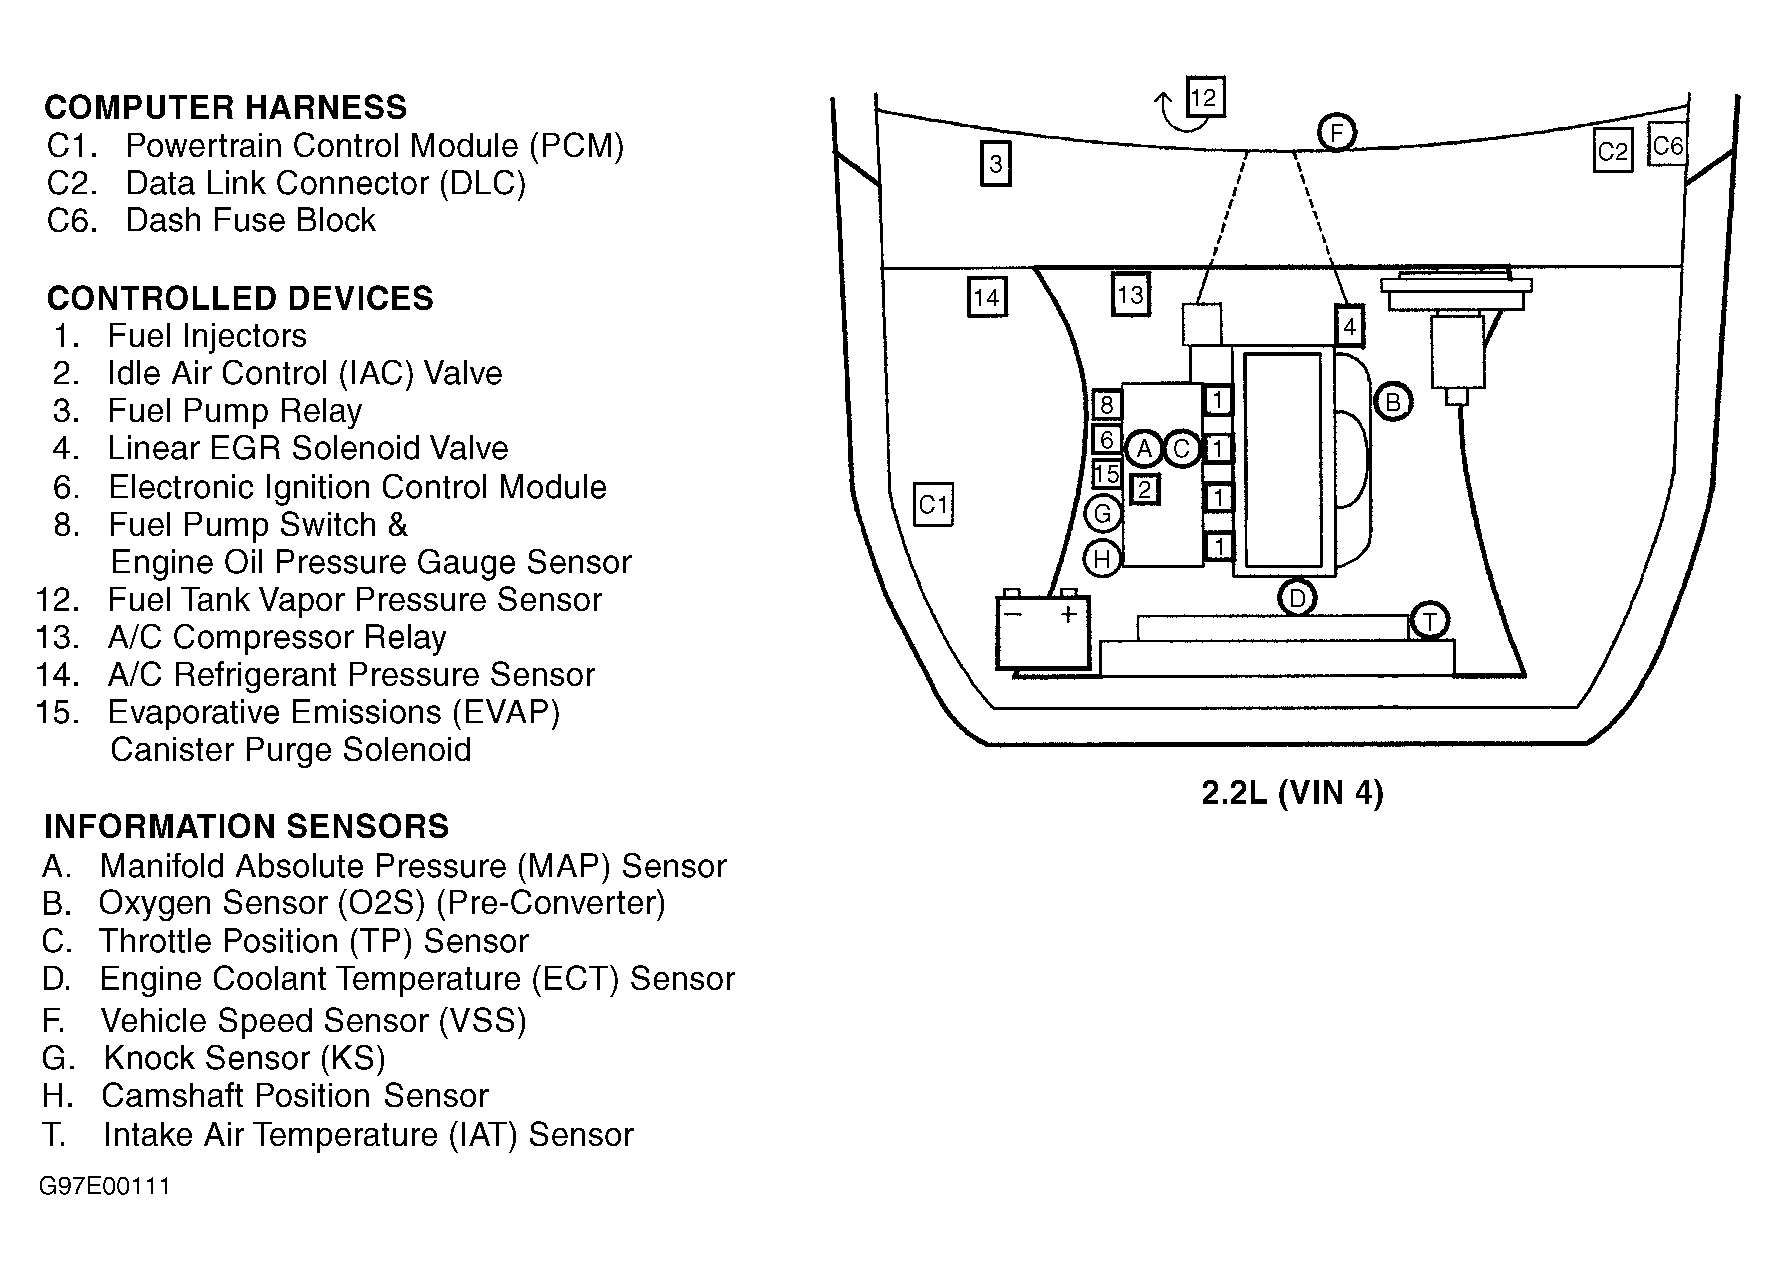 GMC Sonoma 1997 - Component Locations -  Engine Compartment (2.2L VIN 4)